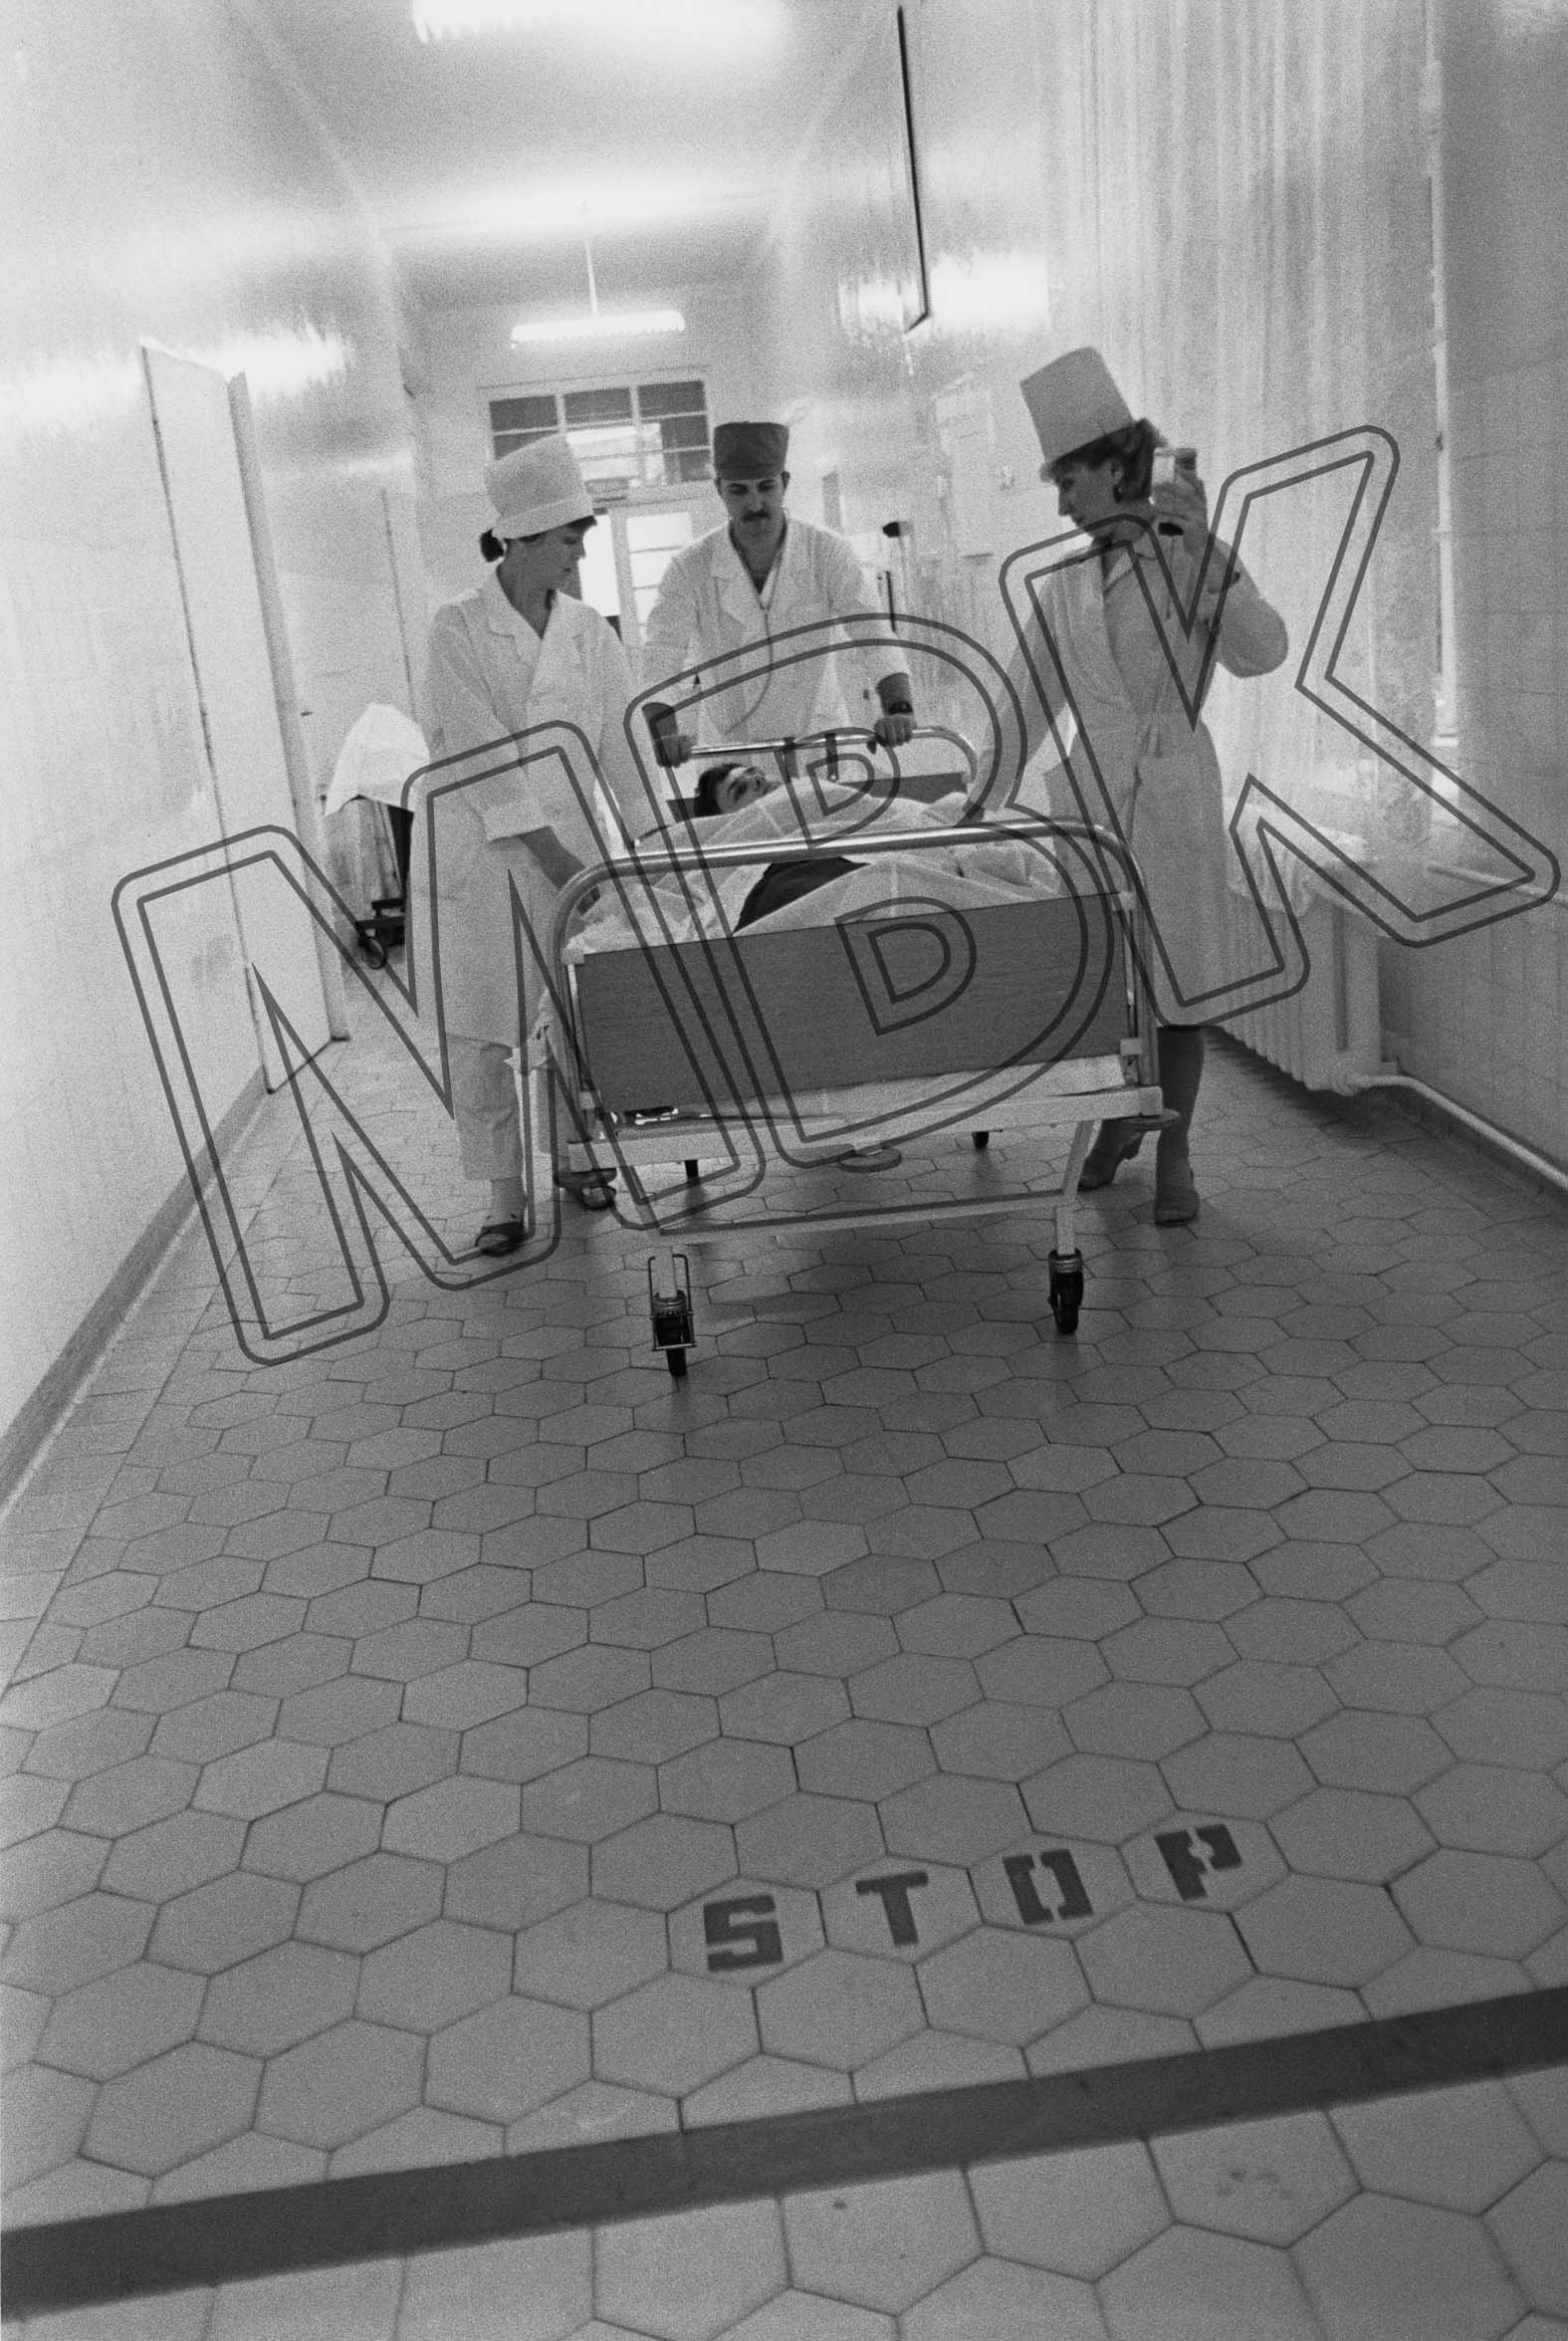 Fotografie: Patiententransport im Krankenhaus, Beelitz, Oktober 1990 (Museum Berlin-Karlshorst RR-P)